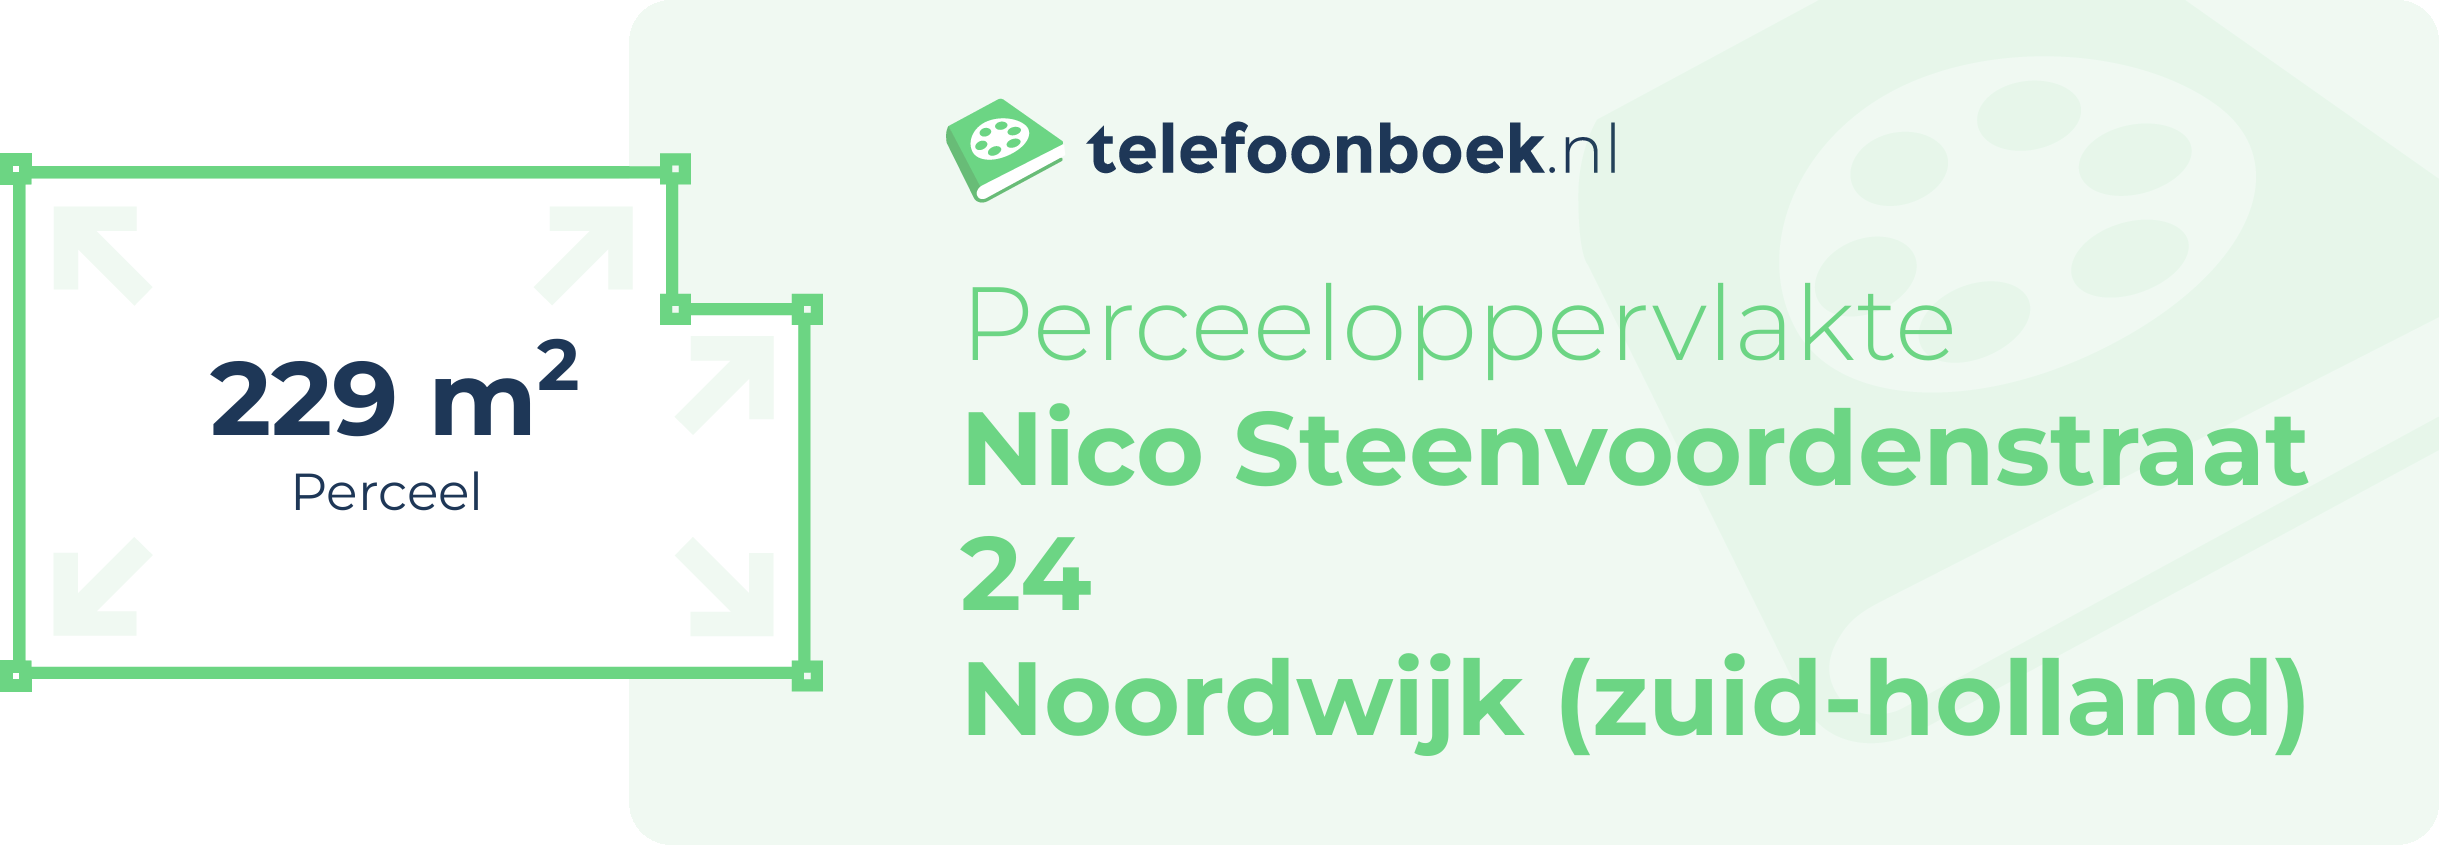 Perceeloppervlakte Nico Steenvoordenstraat 24 Noordwijk (Zuid-Holland)